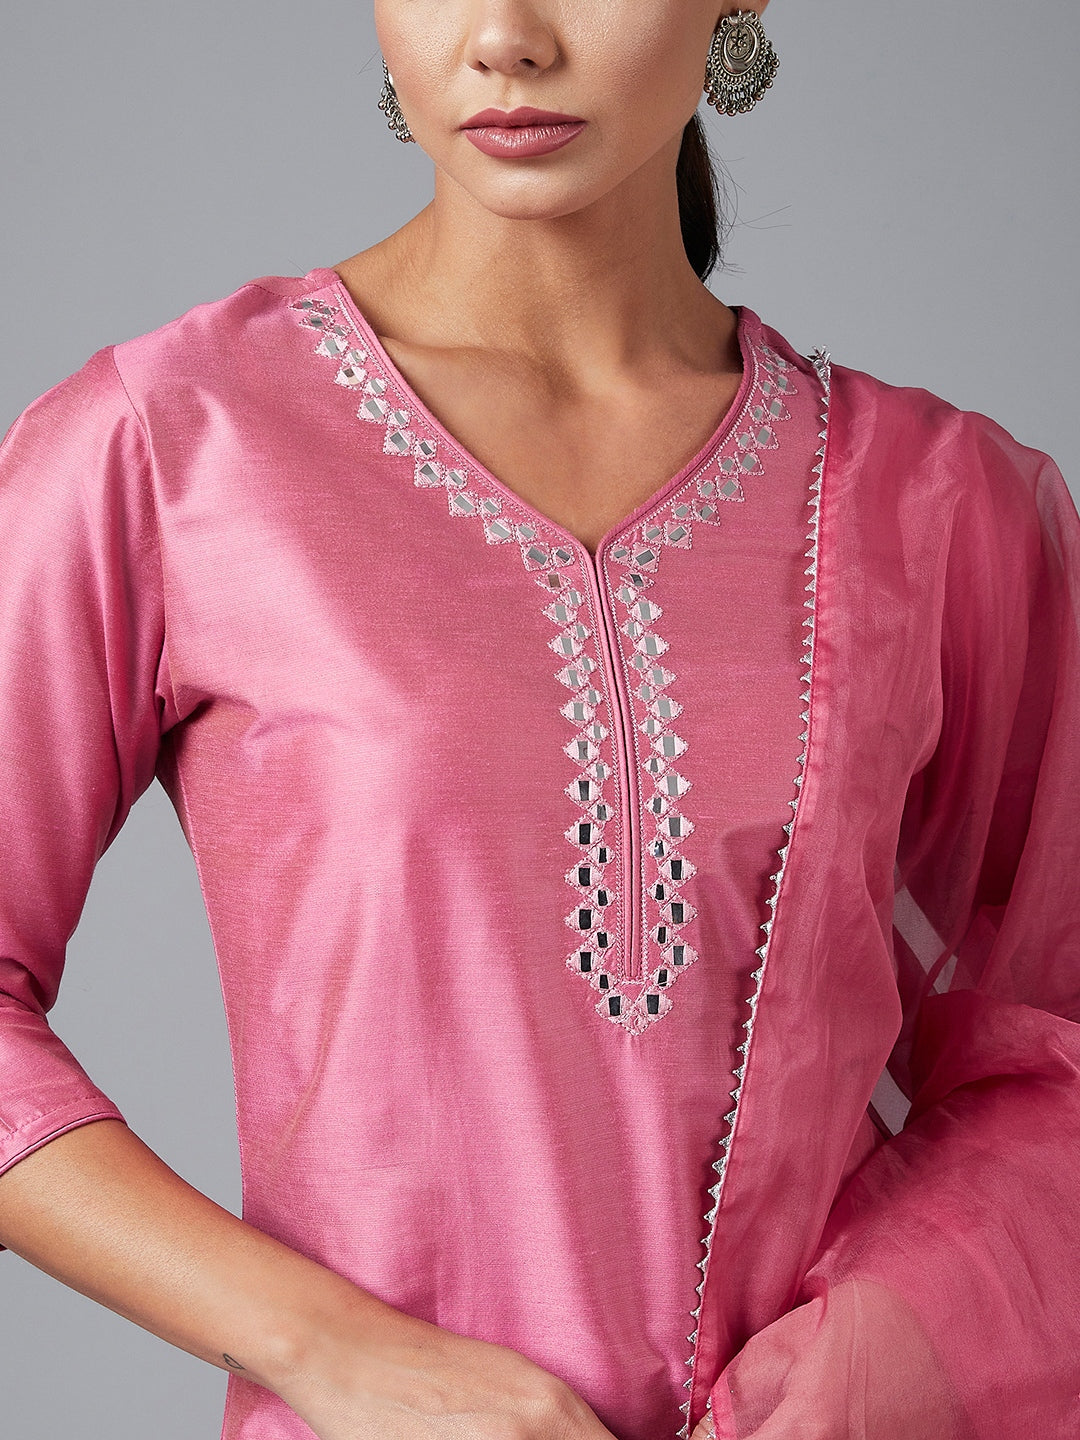 Women's Pink Solid Embroidred Side Slit Straight Kurta Palazzo And Dupatta Set - Azira